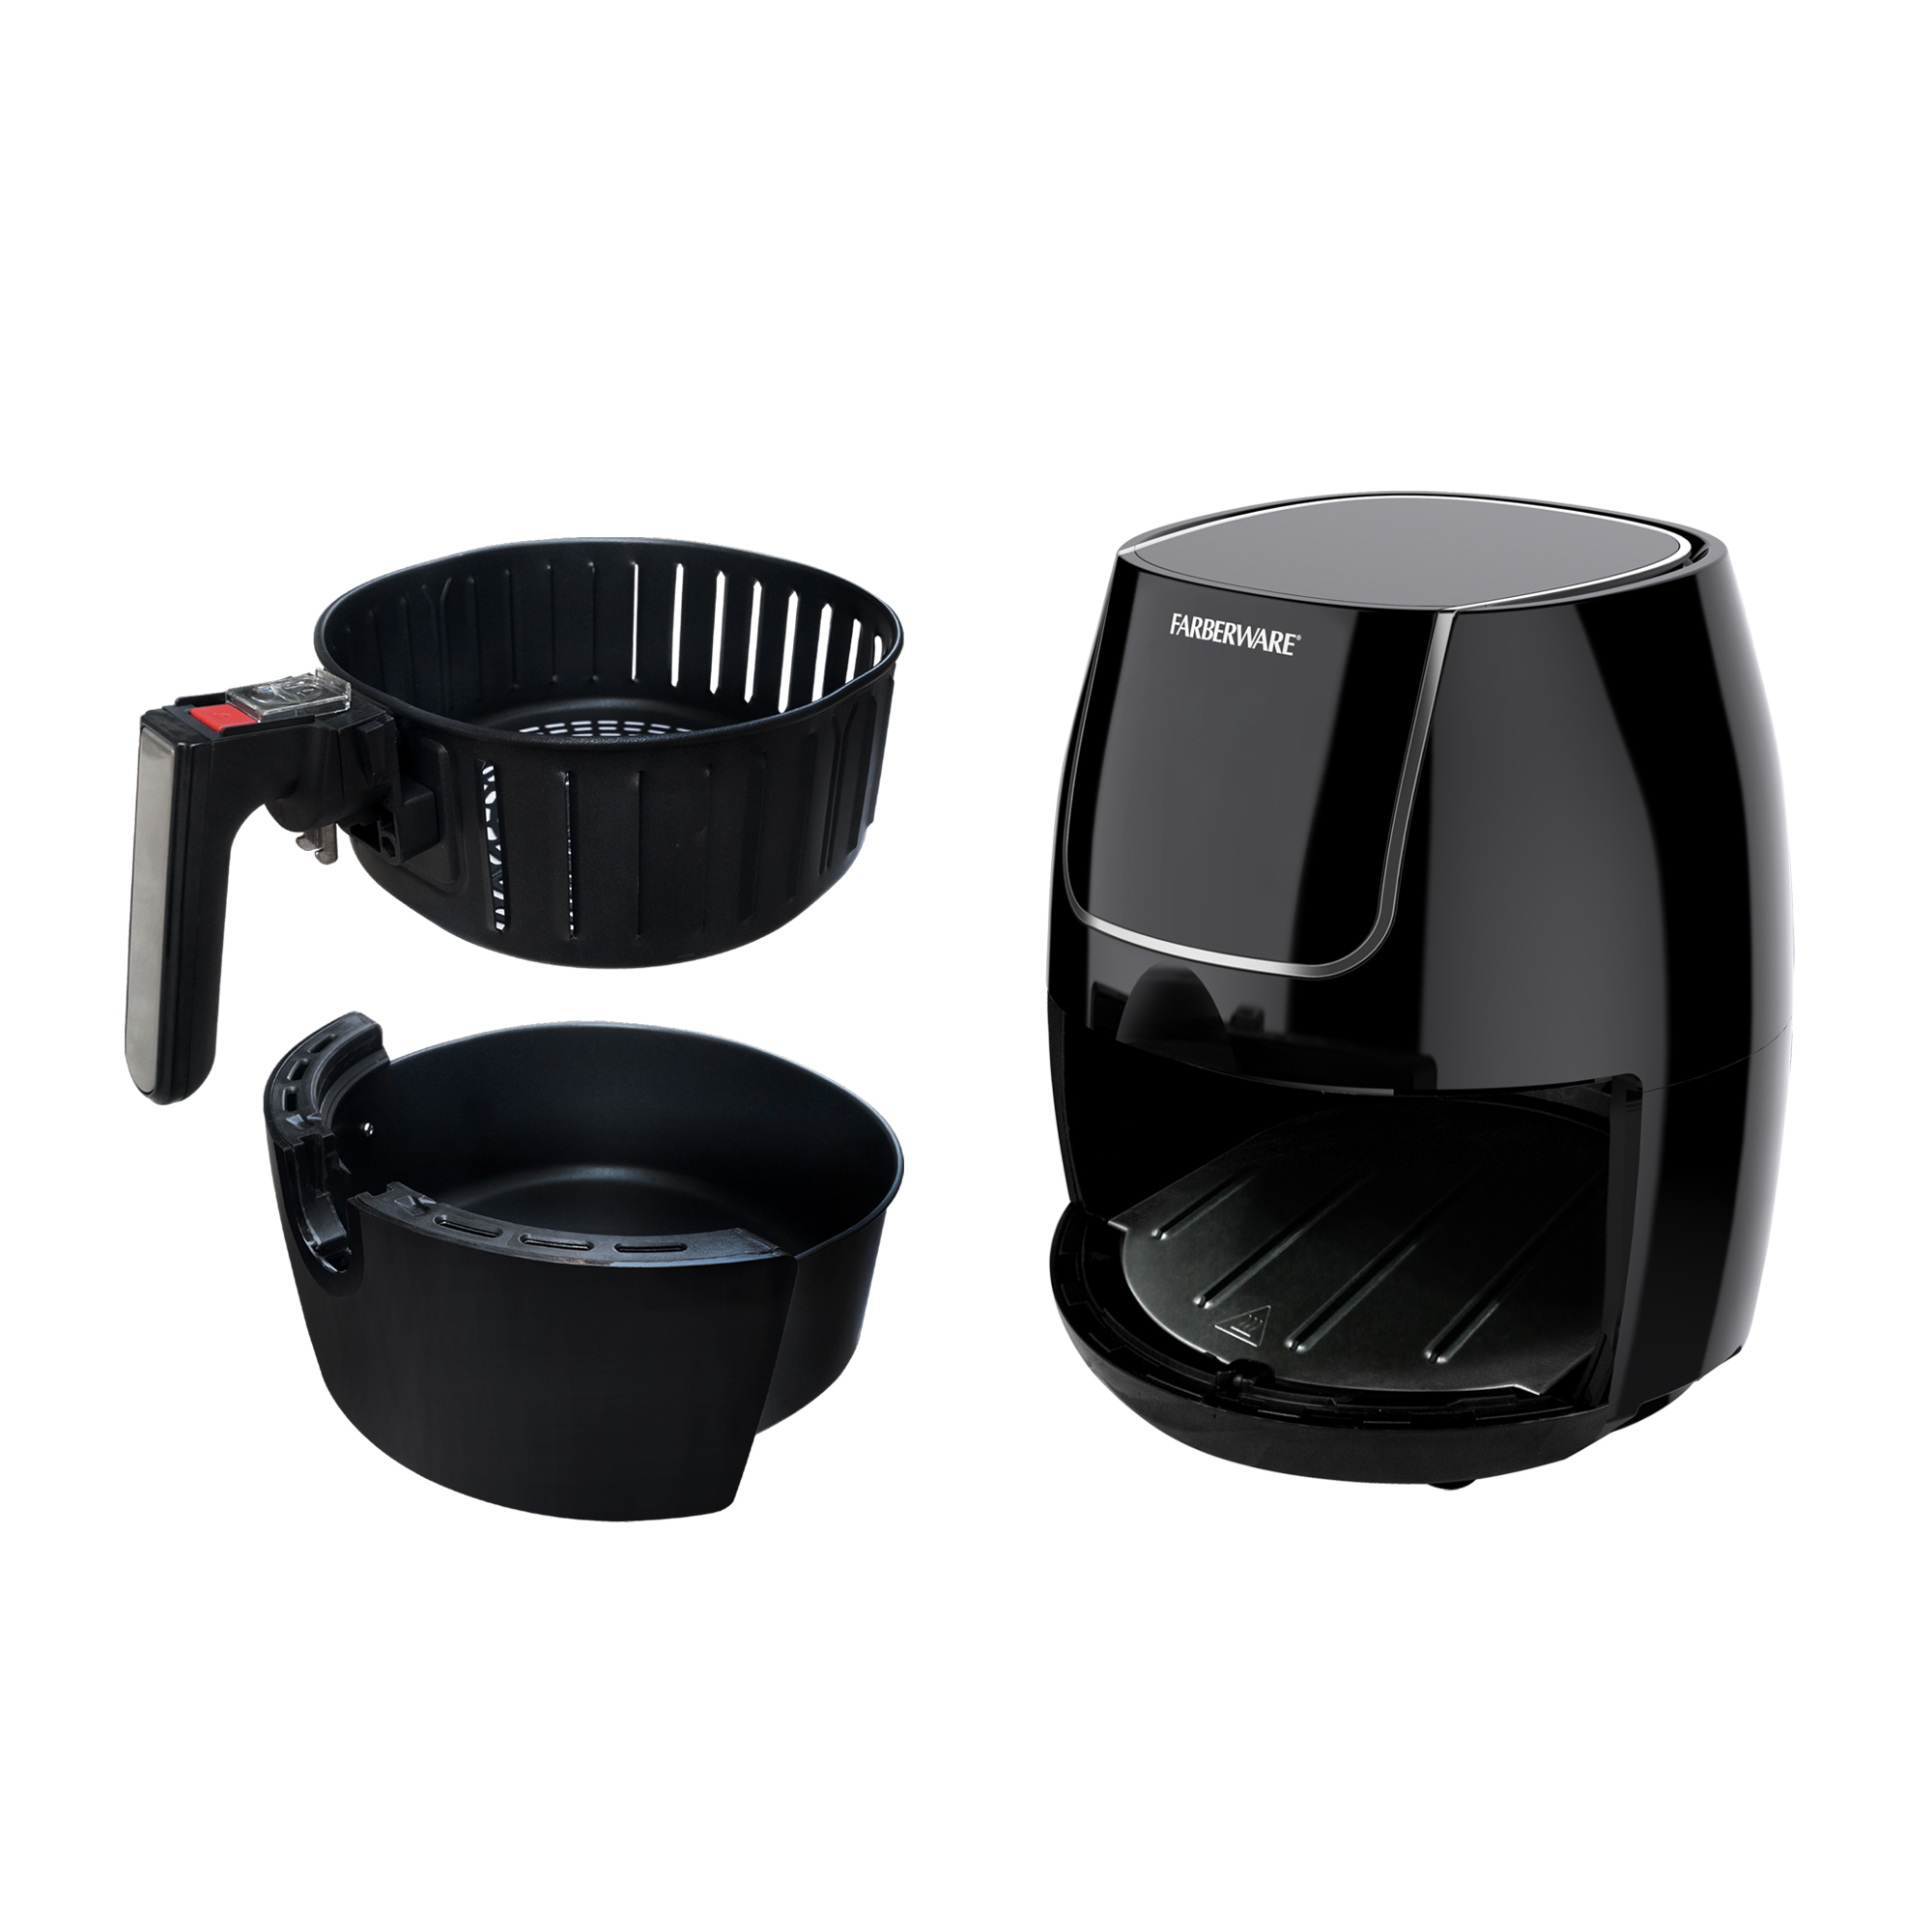 Farberware 5.3 Quart Digital XL Air Fryer, Oil-Less, Black - image 4 of 6